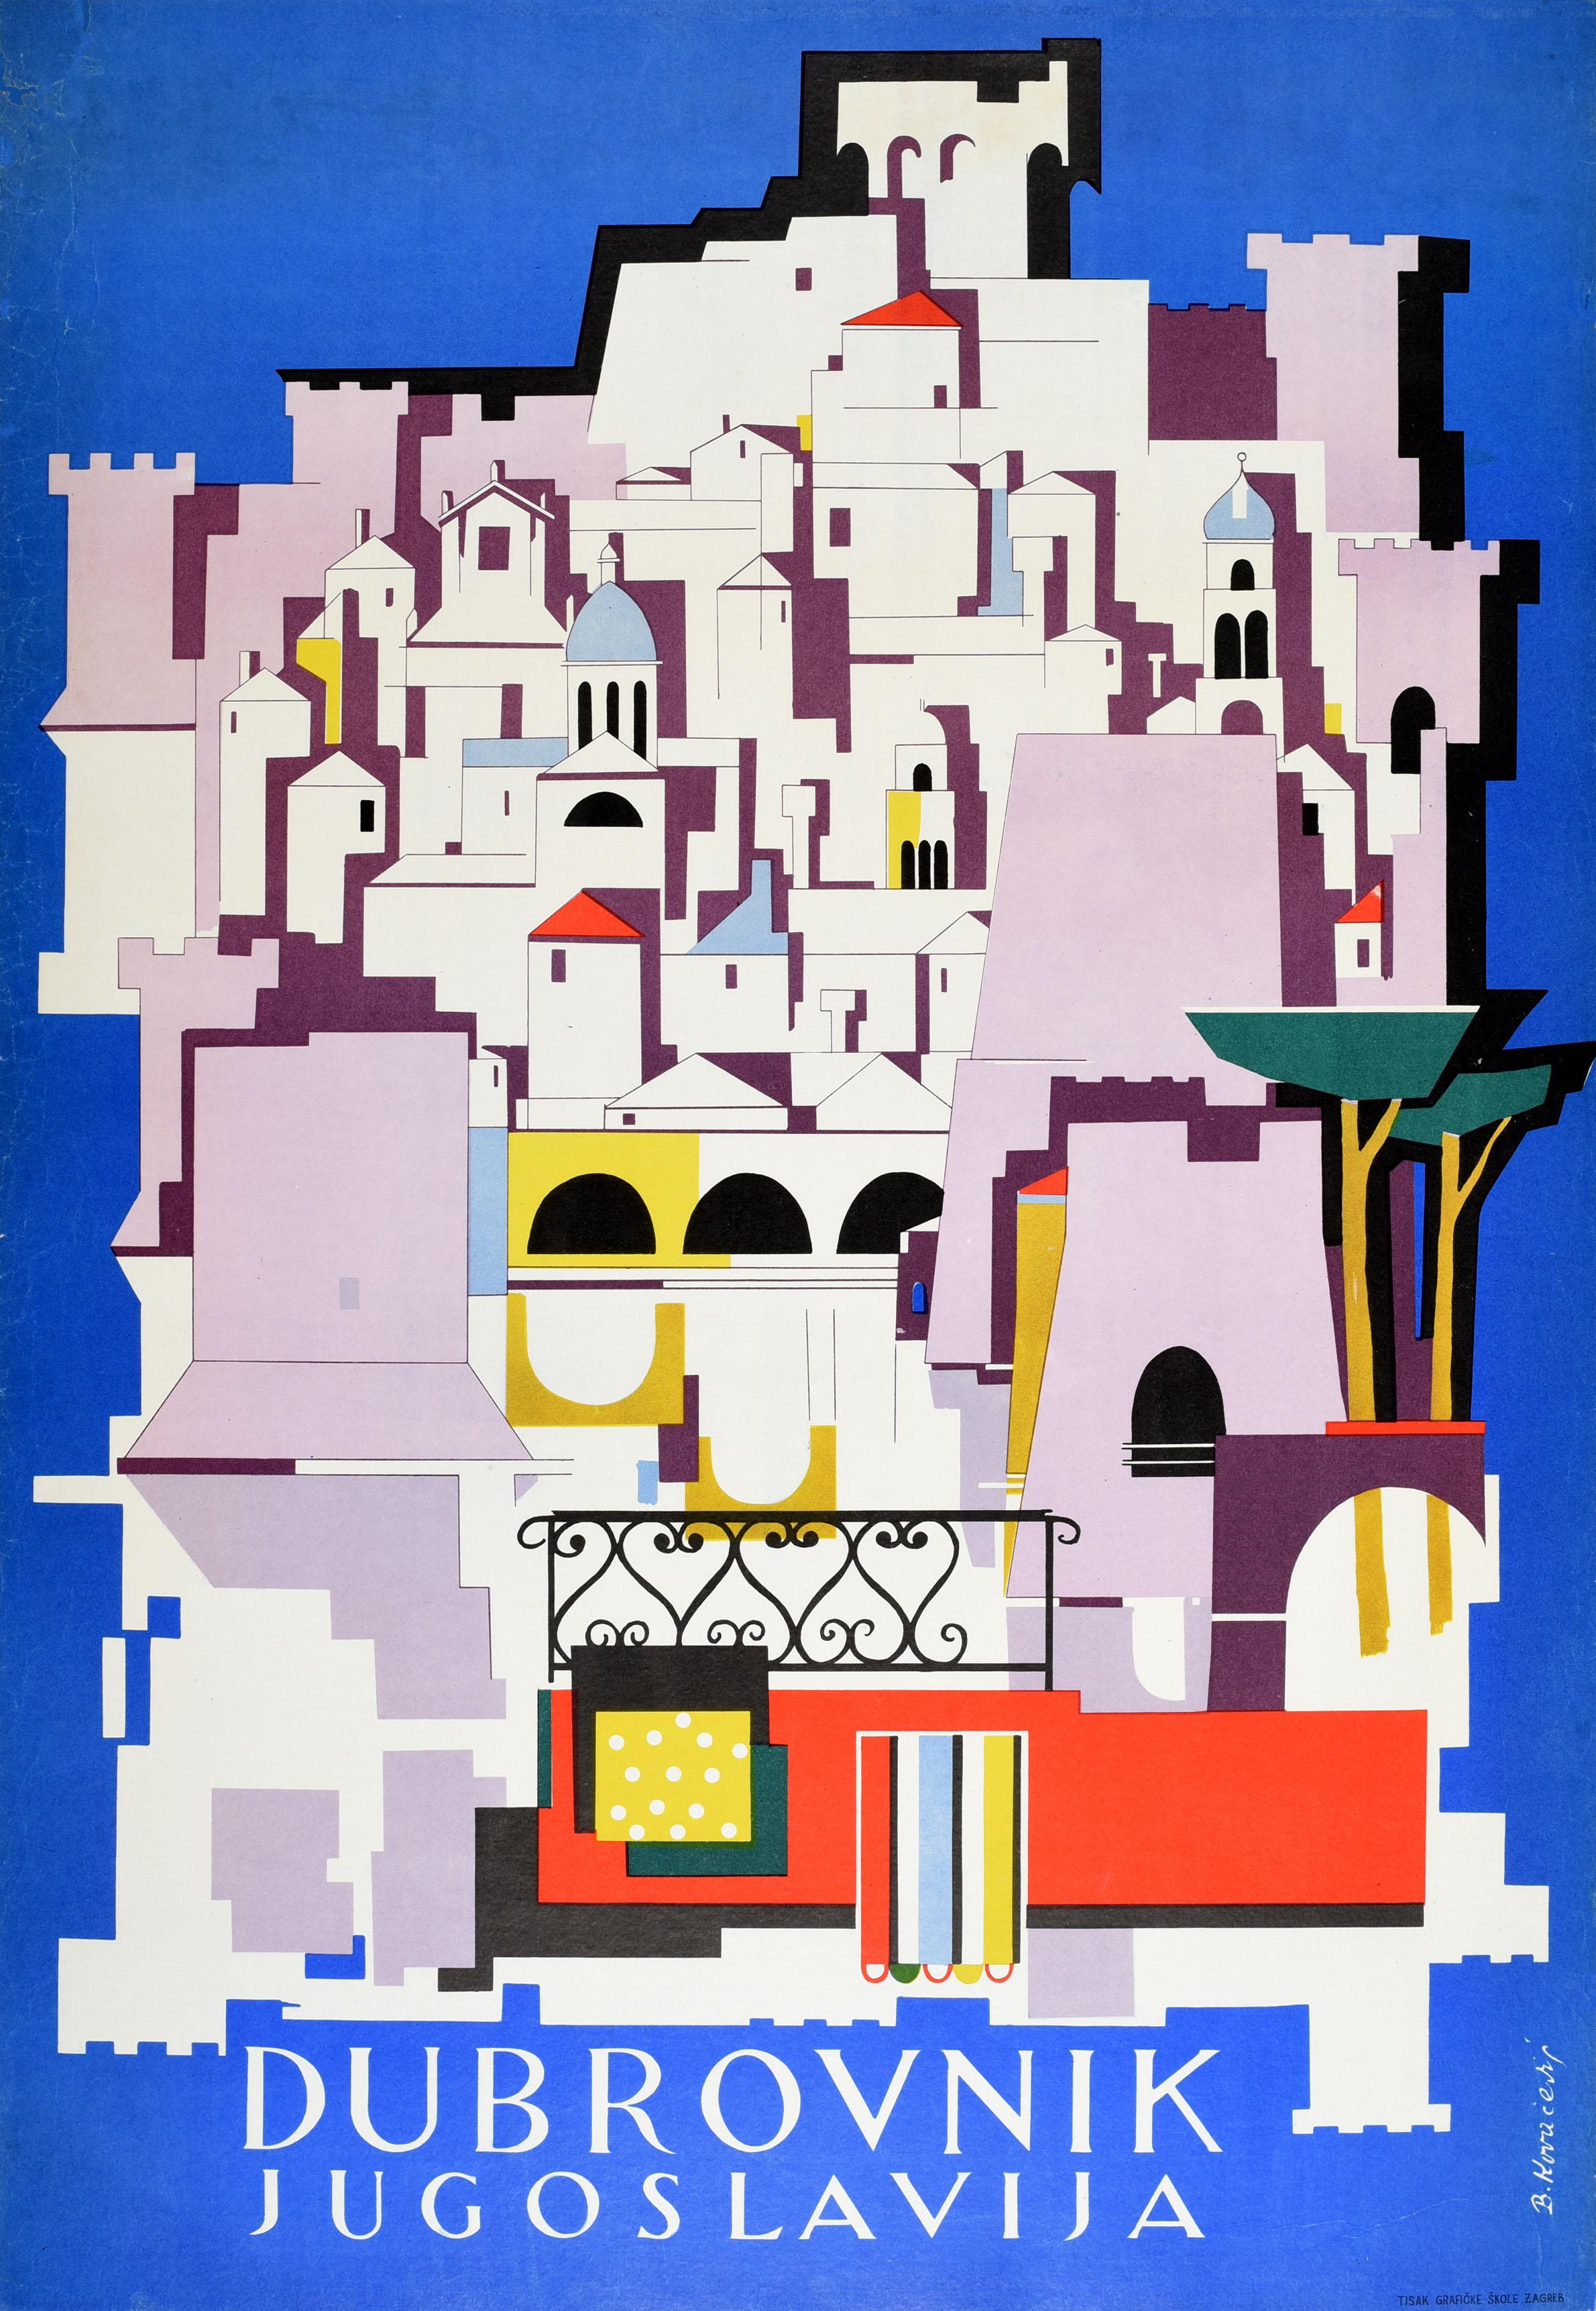 Affiche de voyage vintage originale pour Dubrovnik Jugoslavija / Yougoslavie présentant un dessin coloré des bâtiments historiques et des murs de la forteresse de la vieille ville avec des arbres sur un fond bleu marine. Située sur la mer